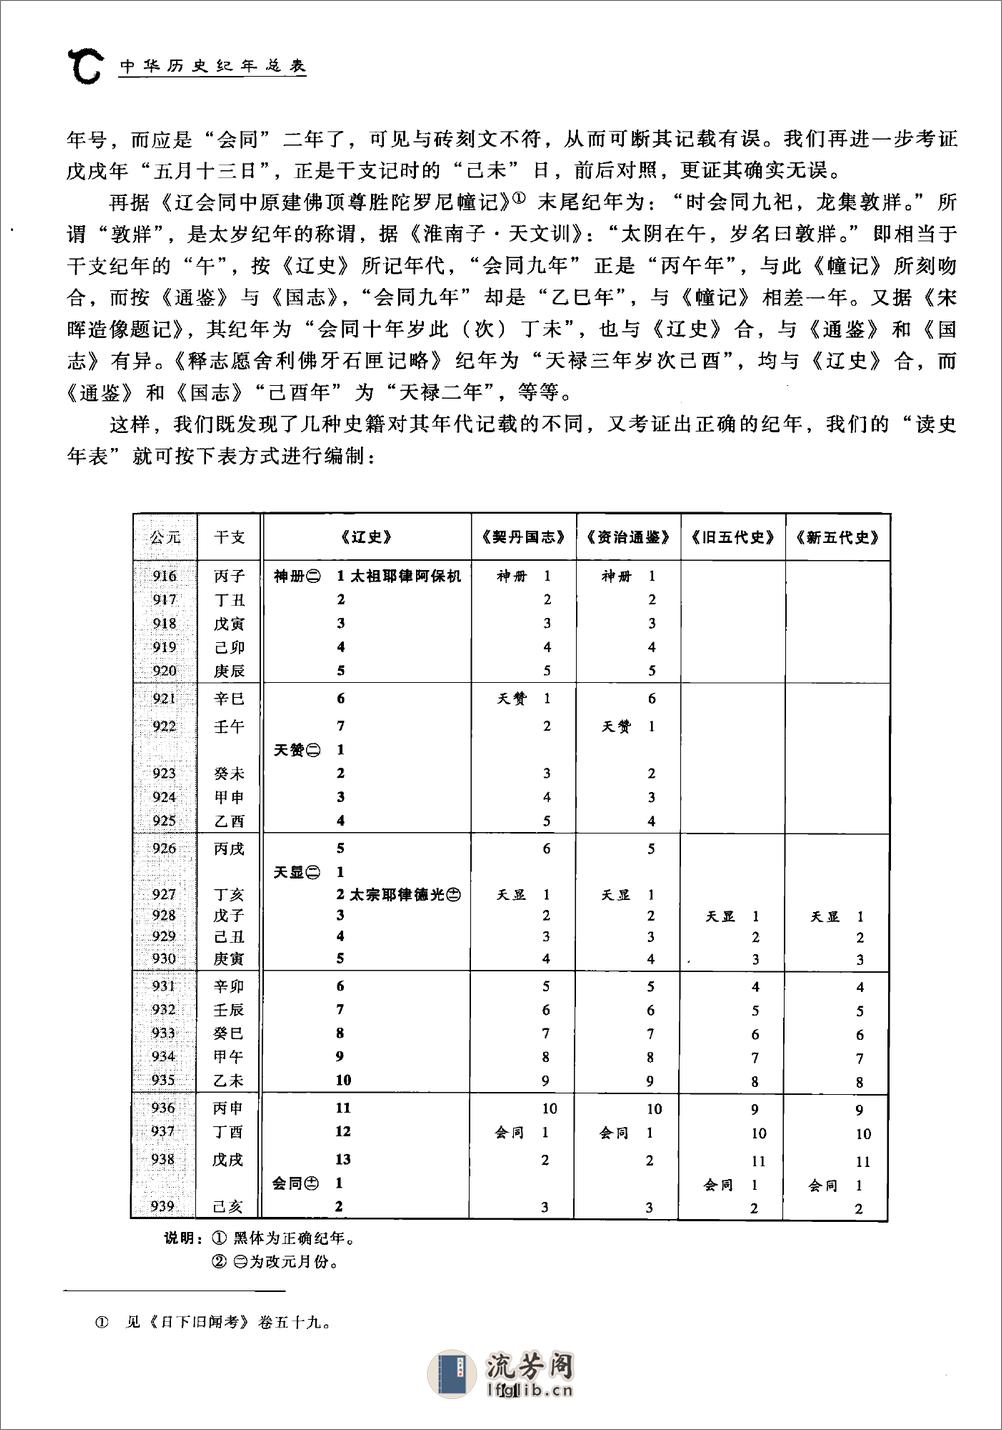 中华历史纪年总表·于宝林·社科文献2010 - 第14页预览图